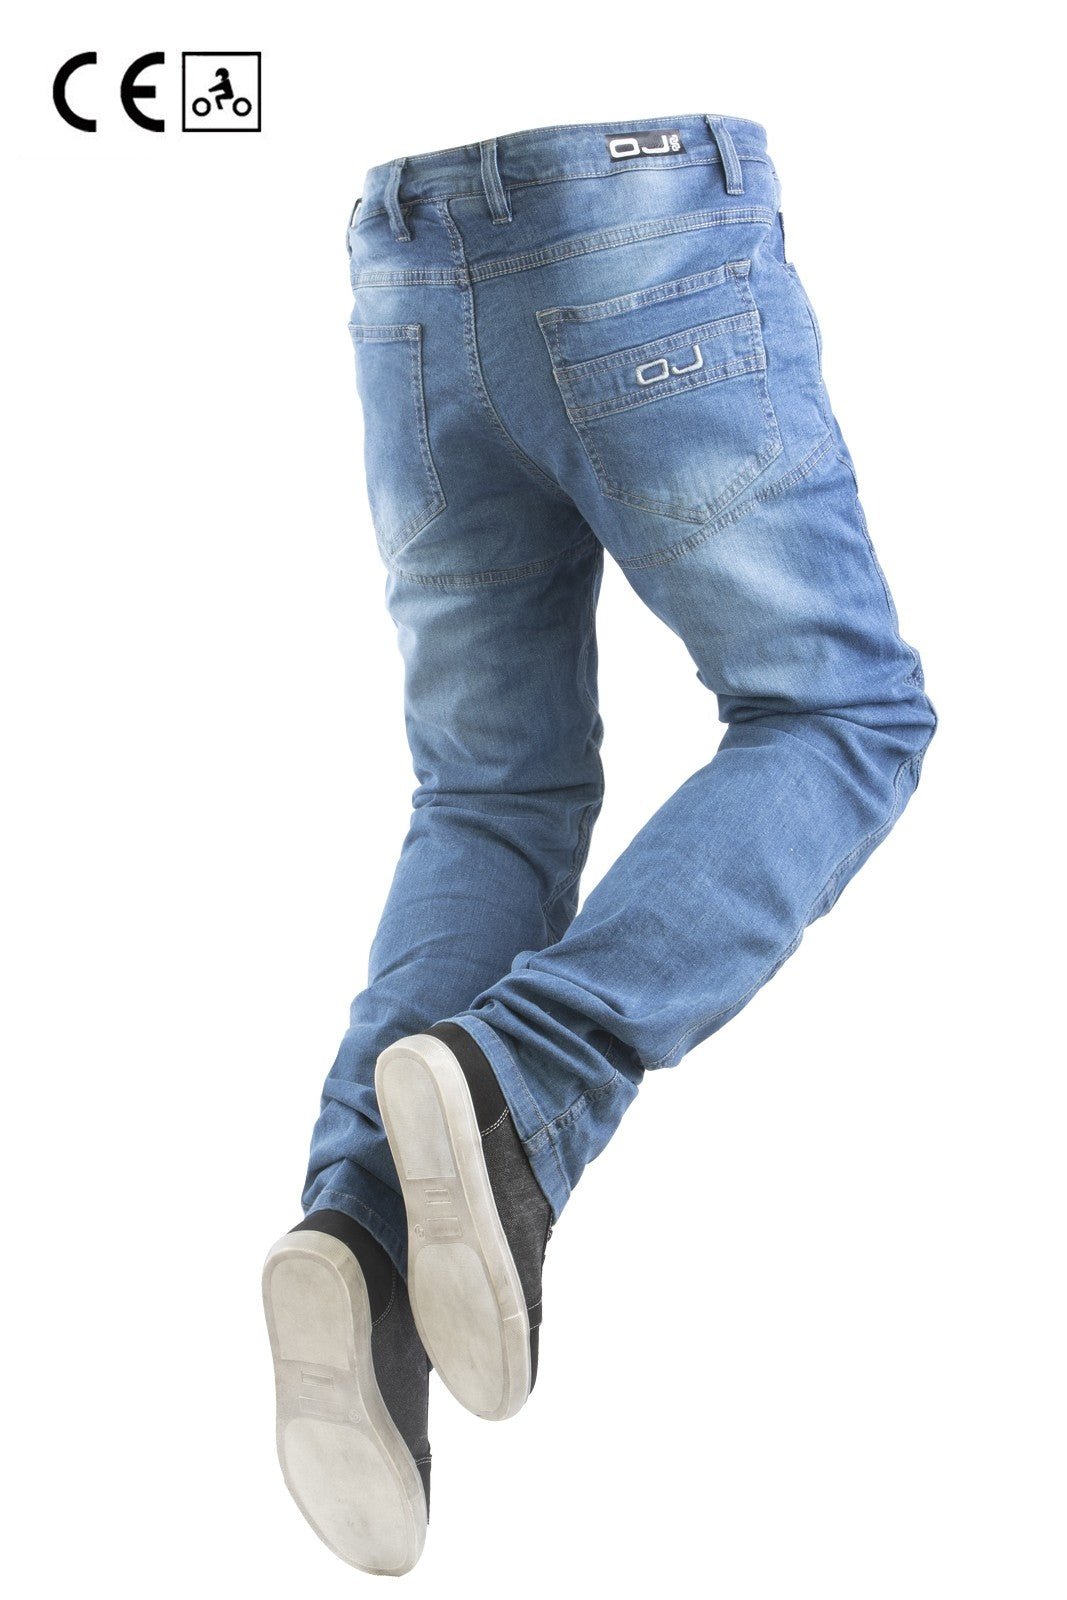 Jeans moto OJ STORM uomo elasticizzato, impermeabile, aramidica e protezioni - OnTheRoad.shop - OJ